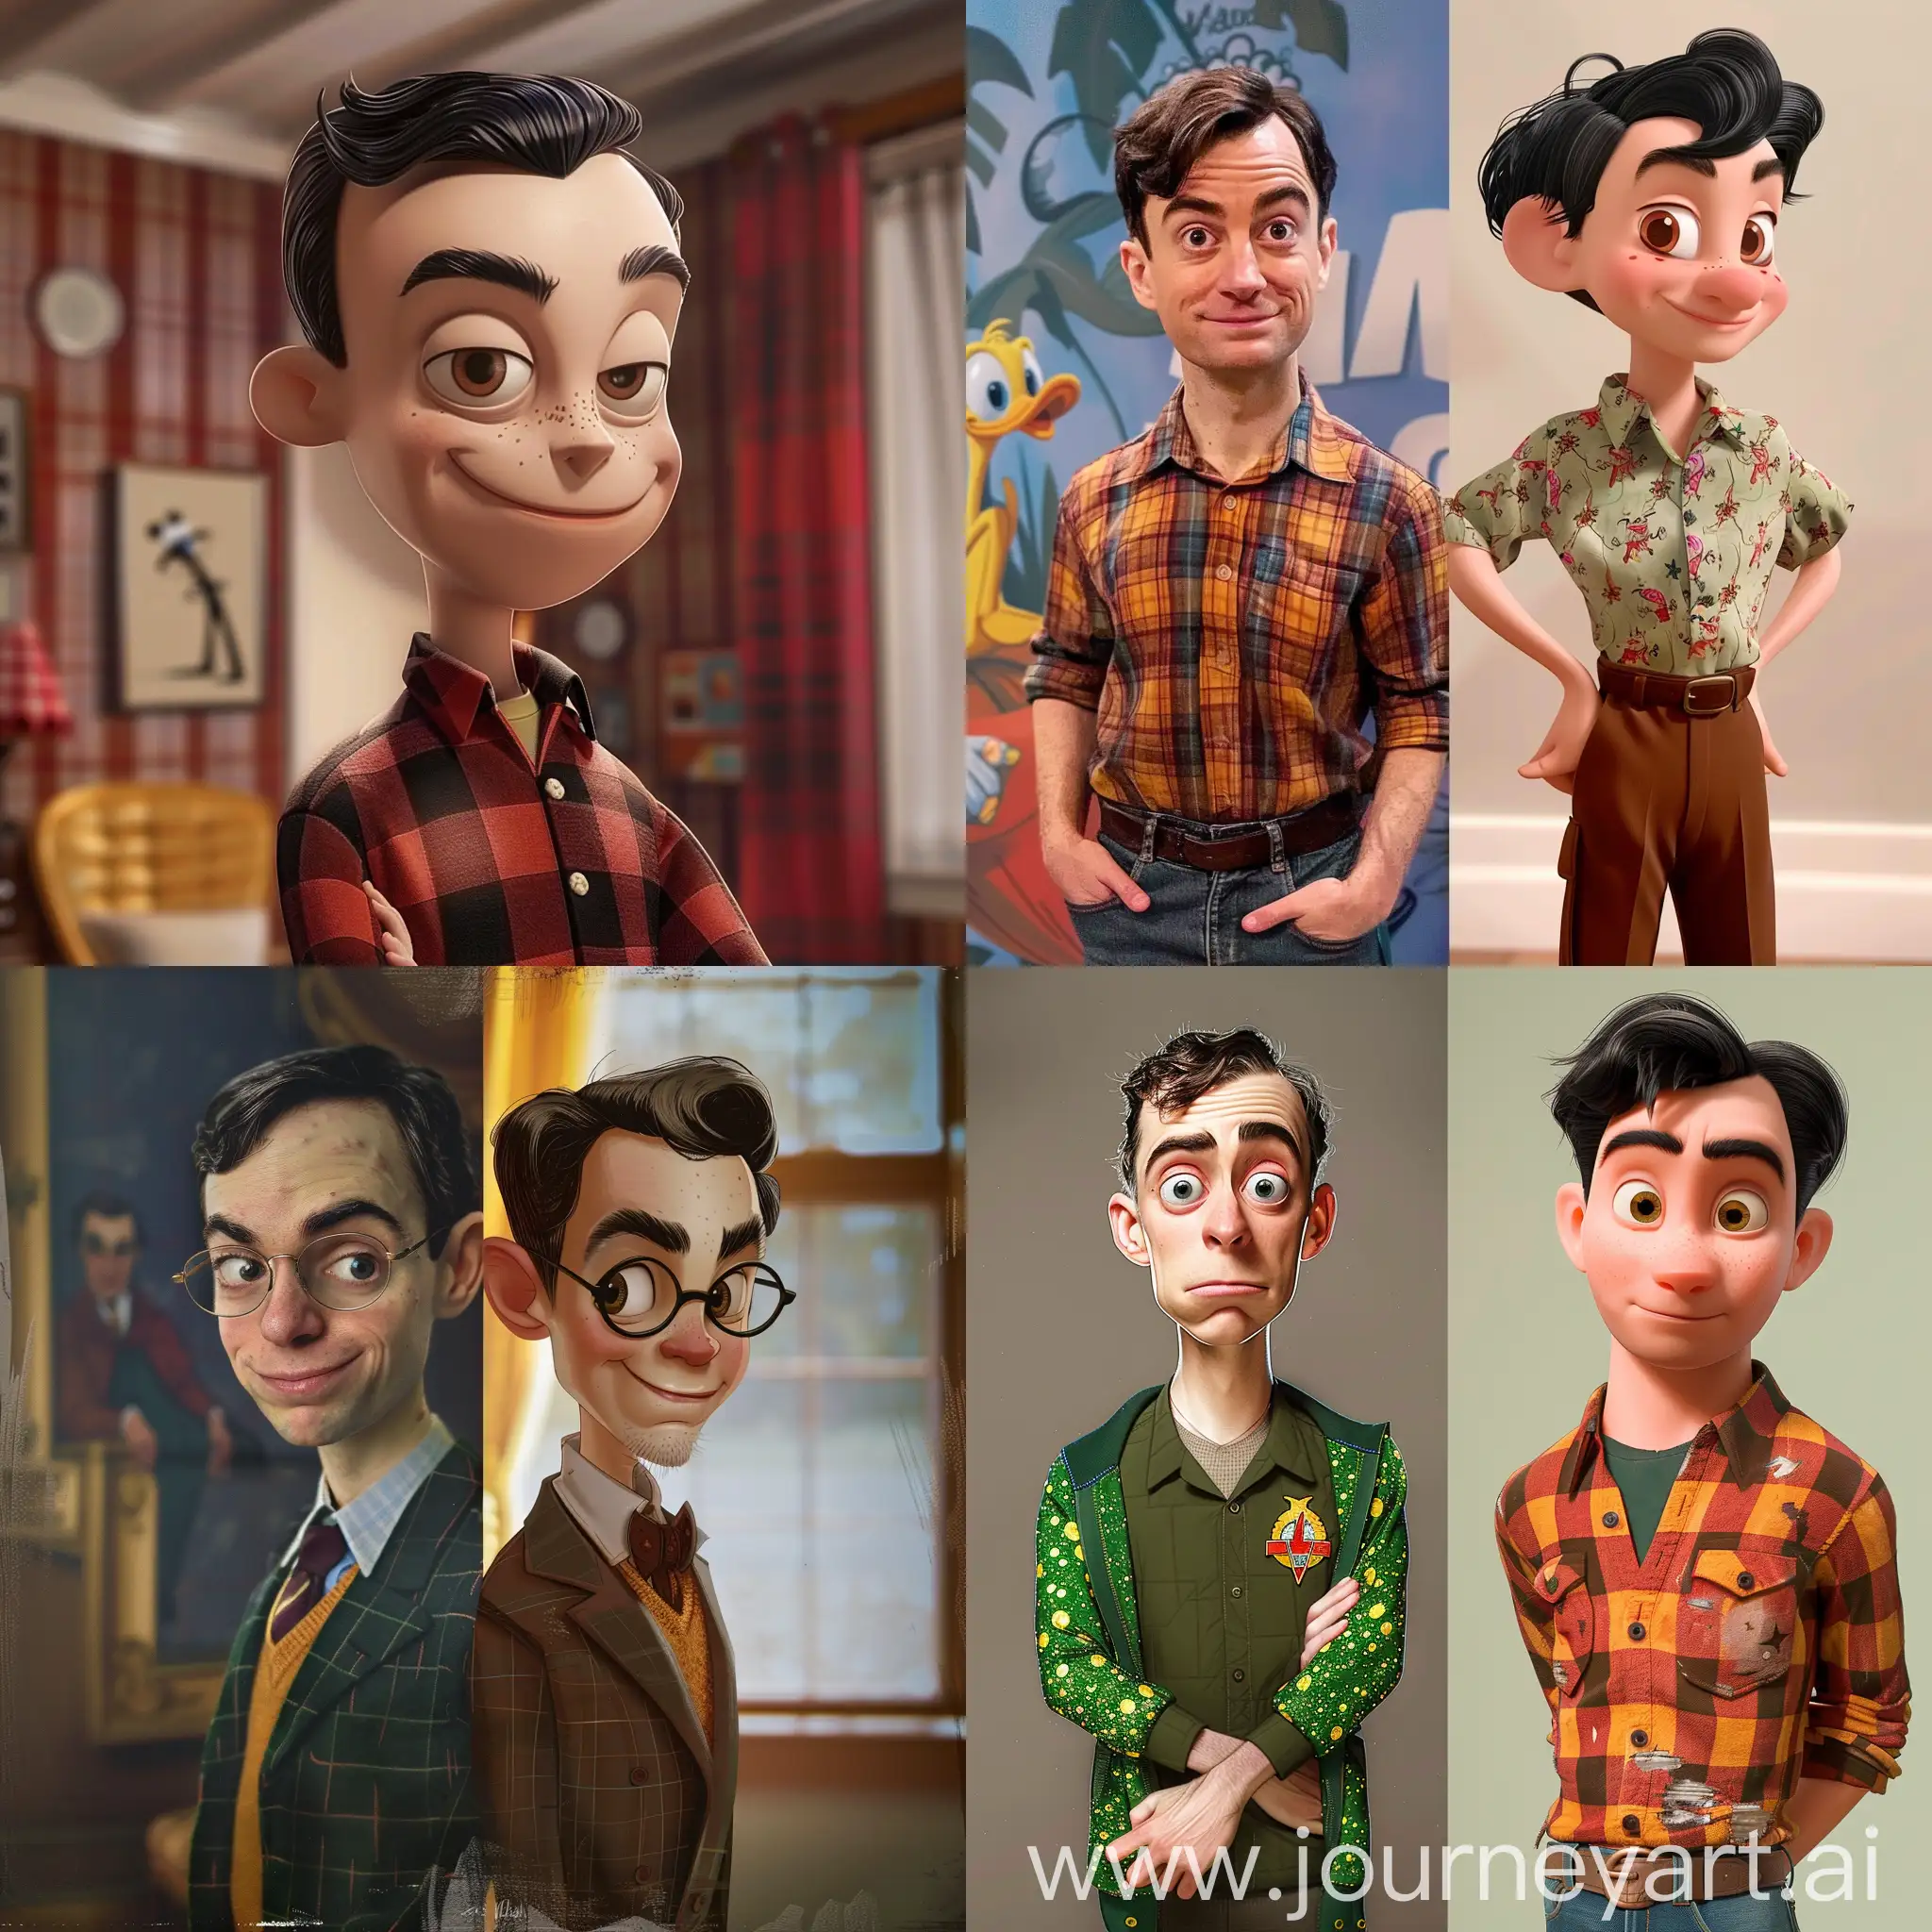 Whimsical-DisneyInspired-Sheldon-Cooper-Portrait